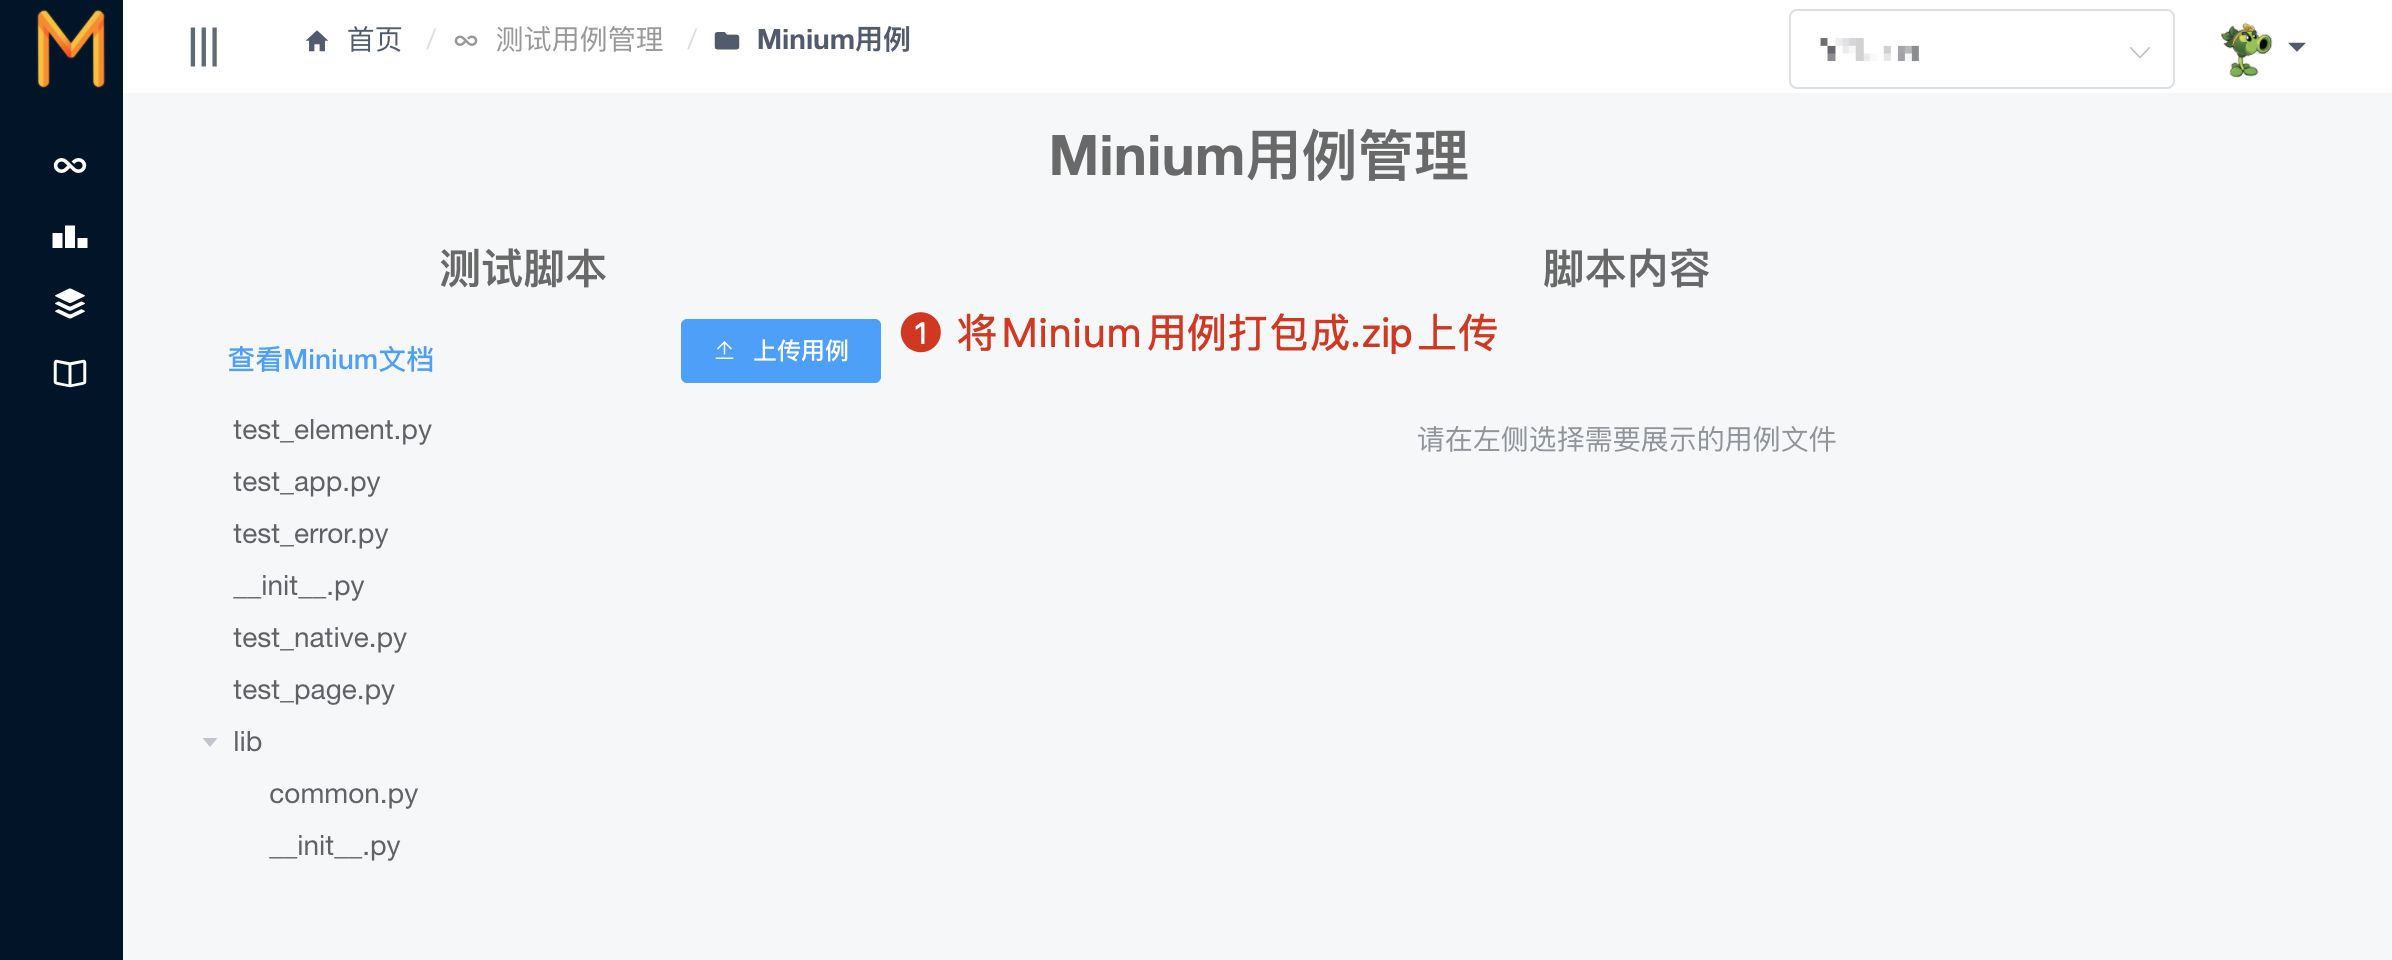 Minium测试用例上传